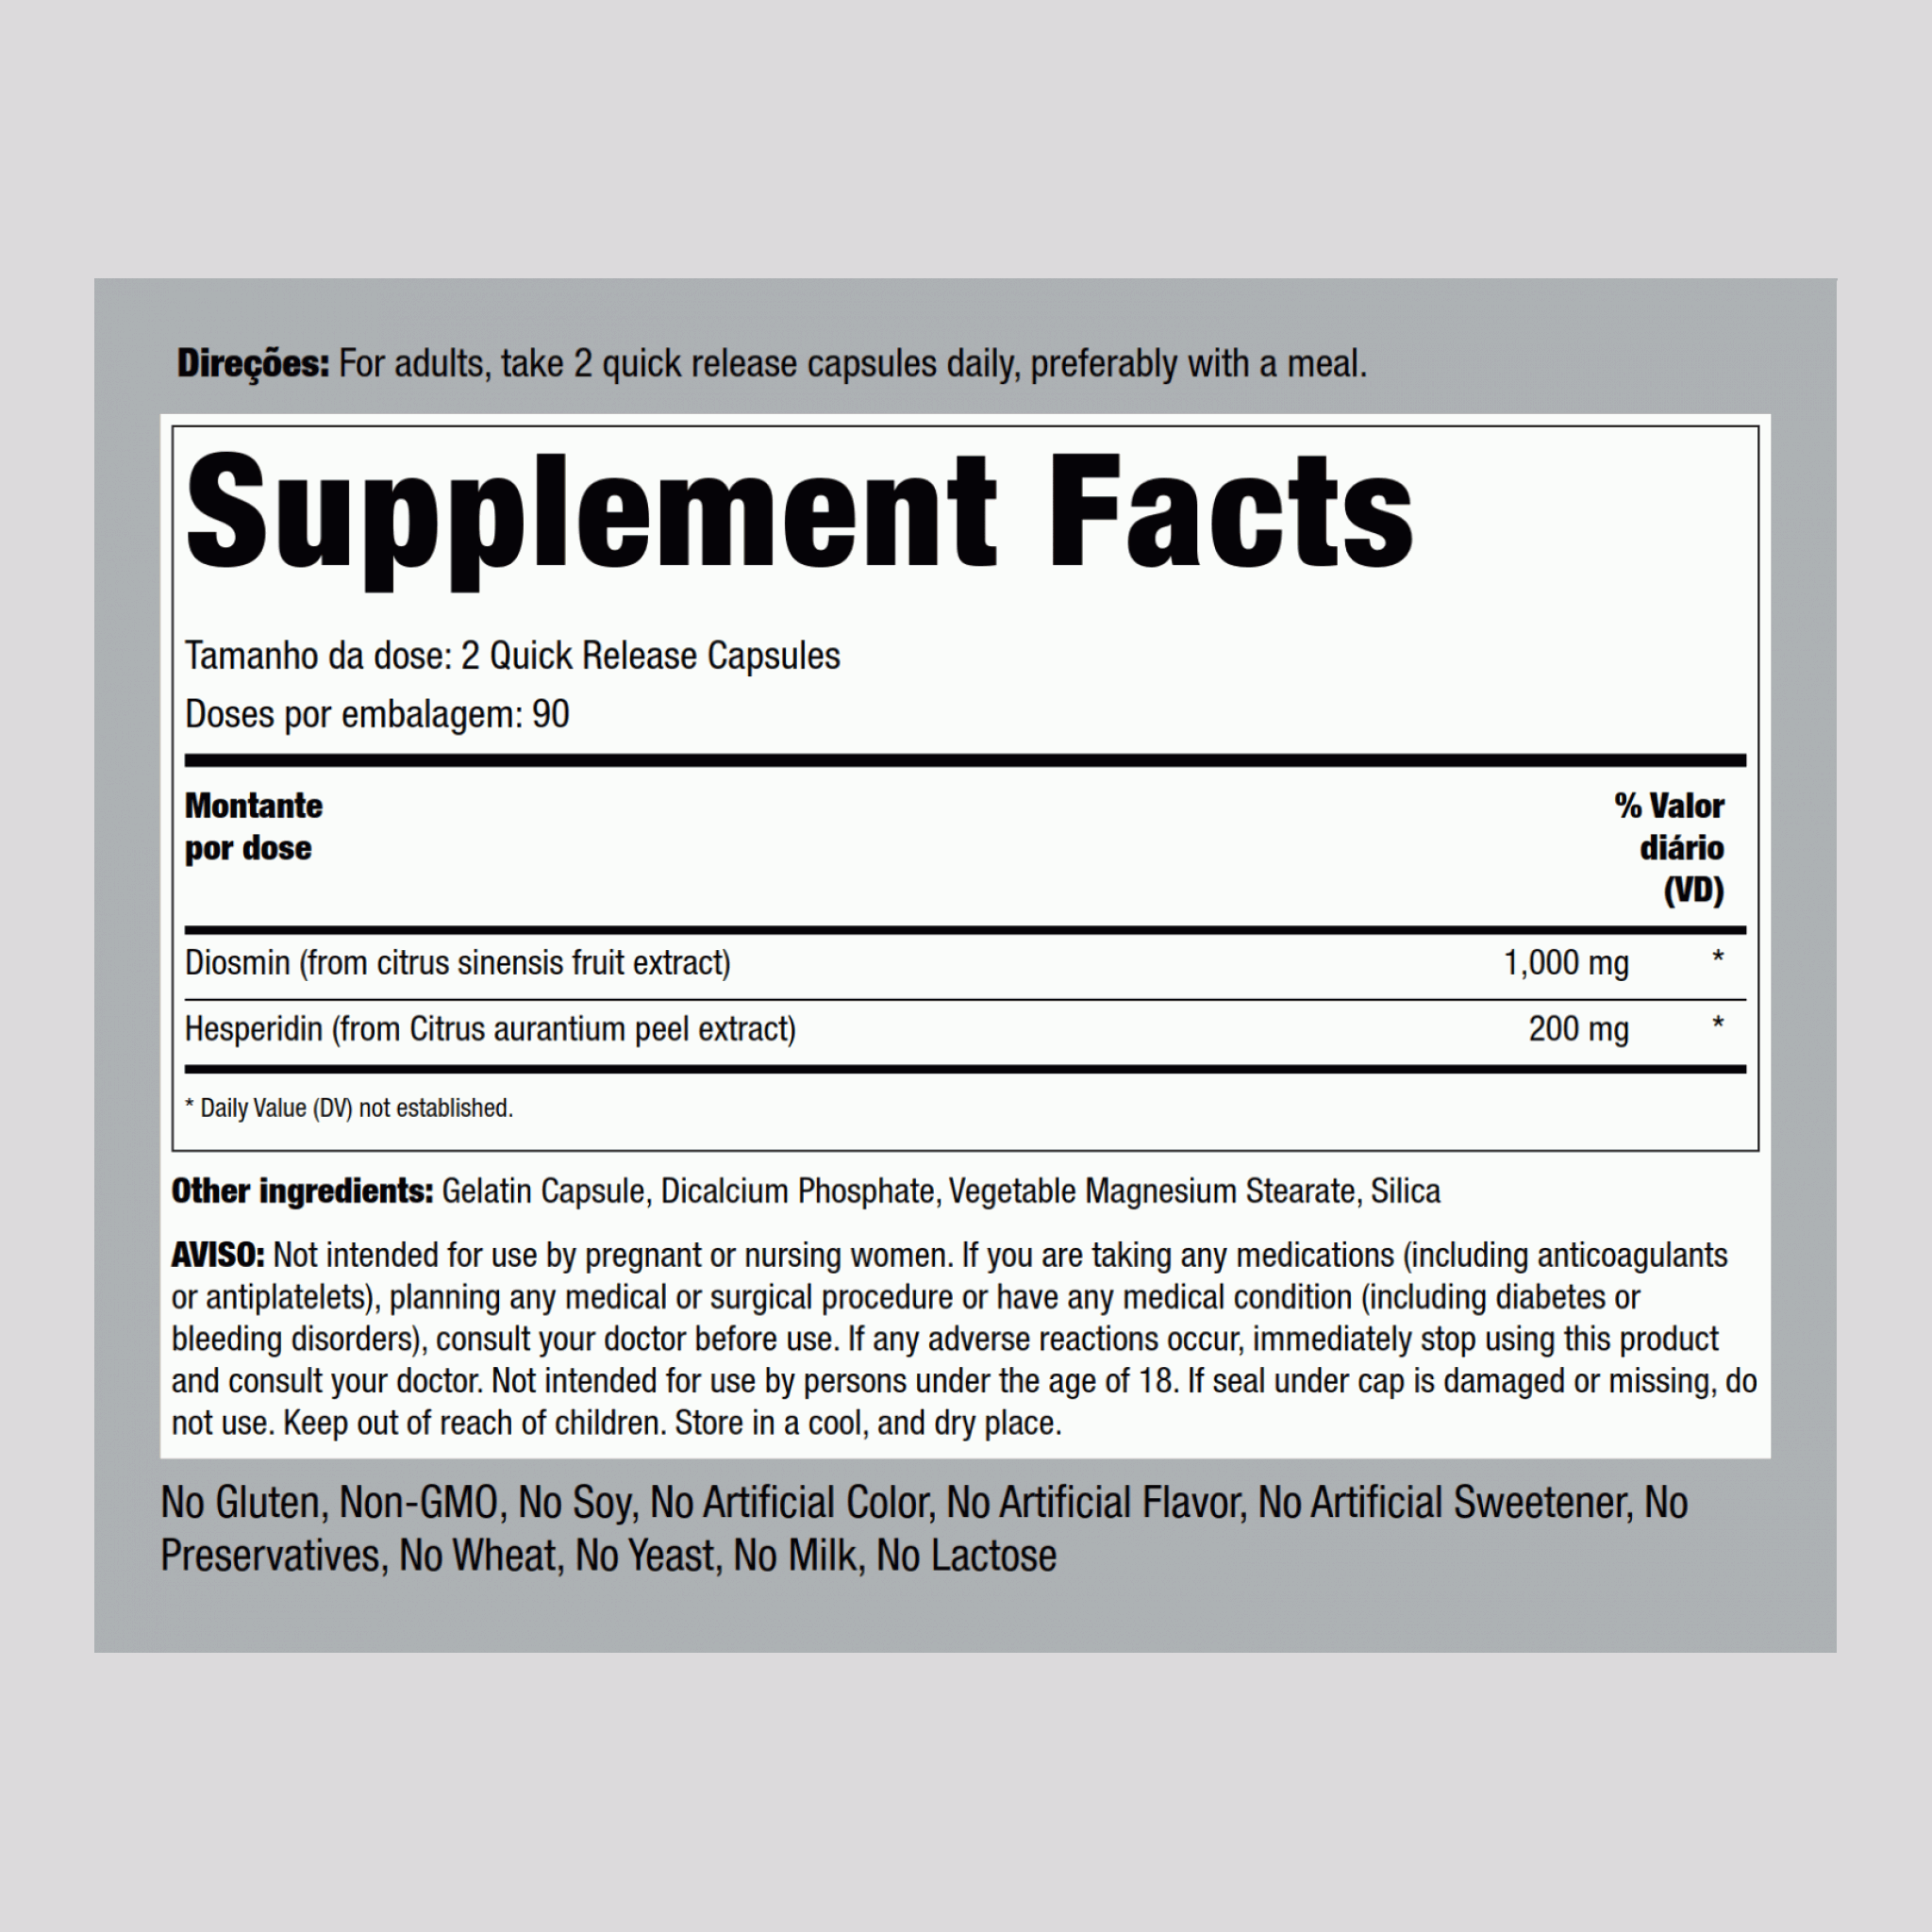 Diosmine avec hespéridine 1200 mg (par portion) 180 Gélules à libération rapide 2 Bouteilles    